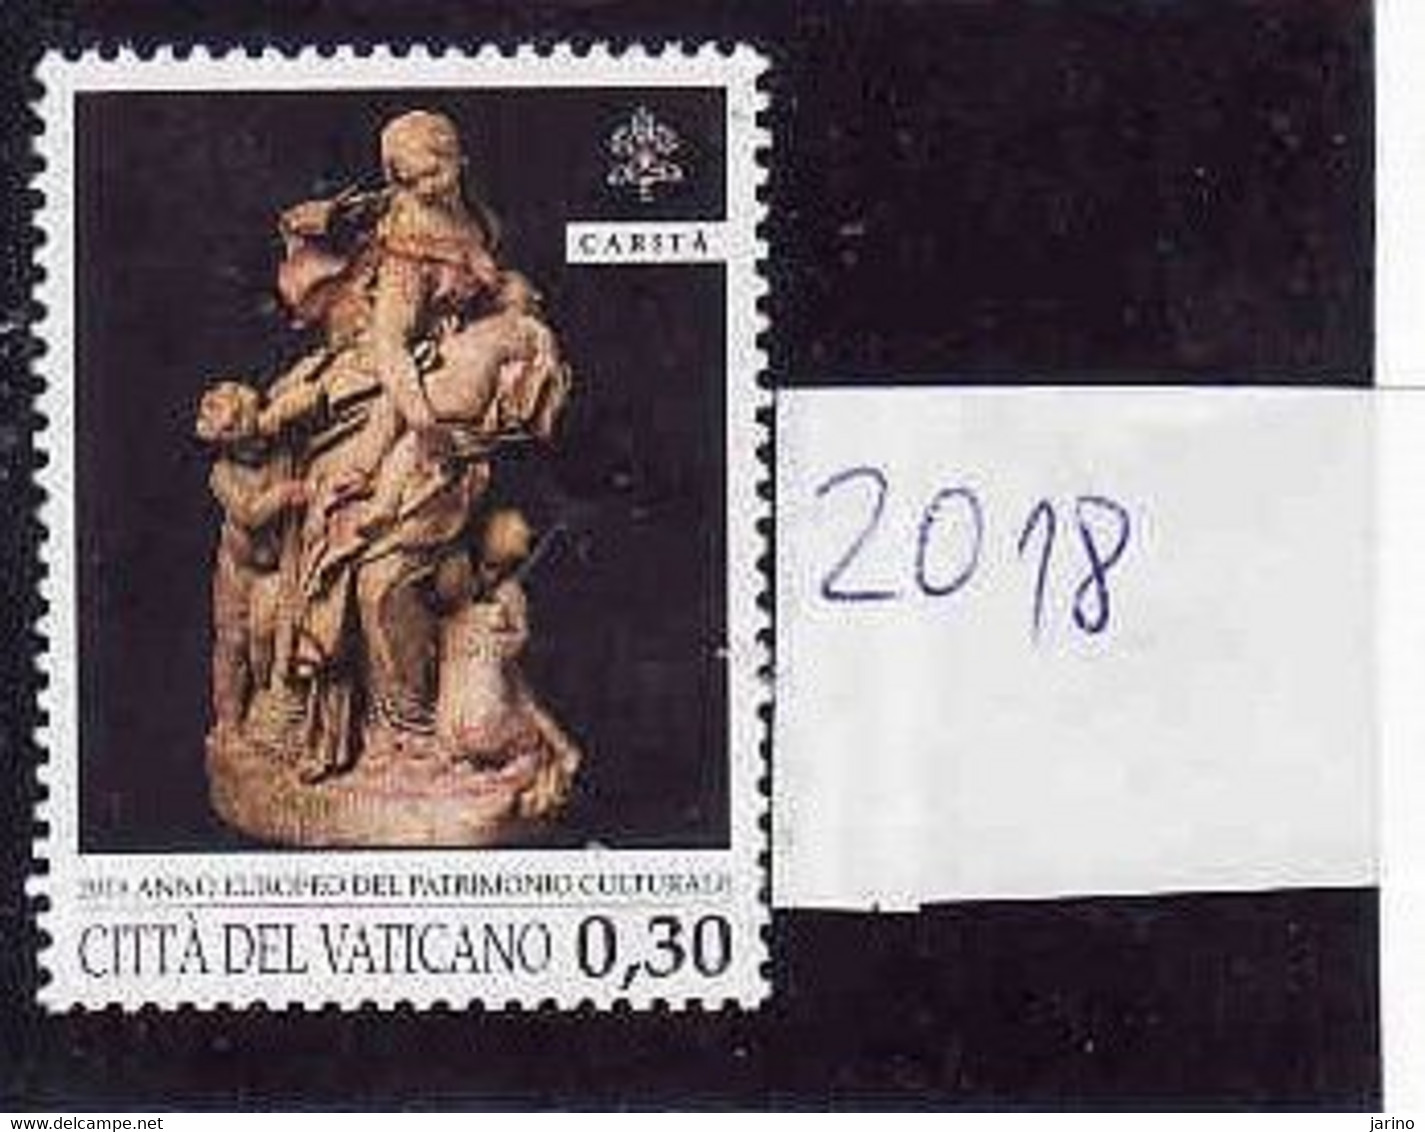 Vatican 2018,  Used - Oblitérés